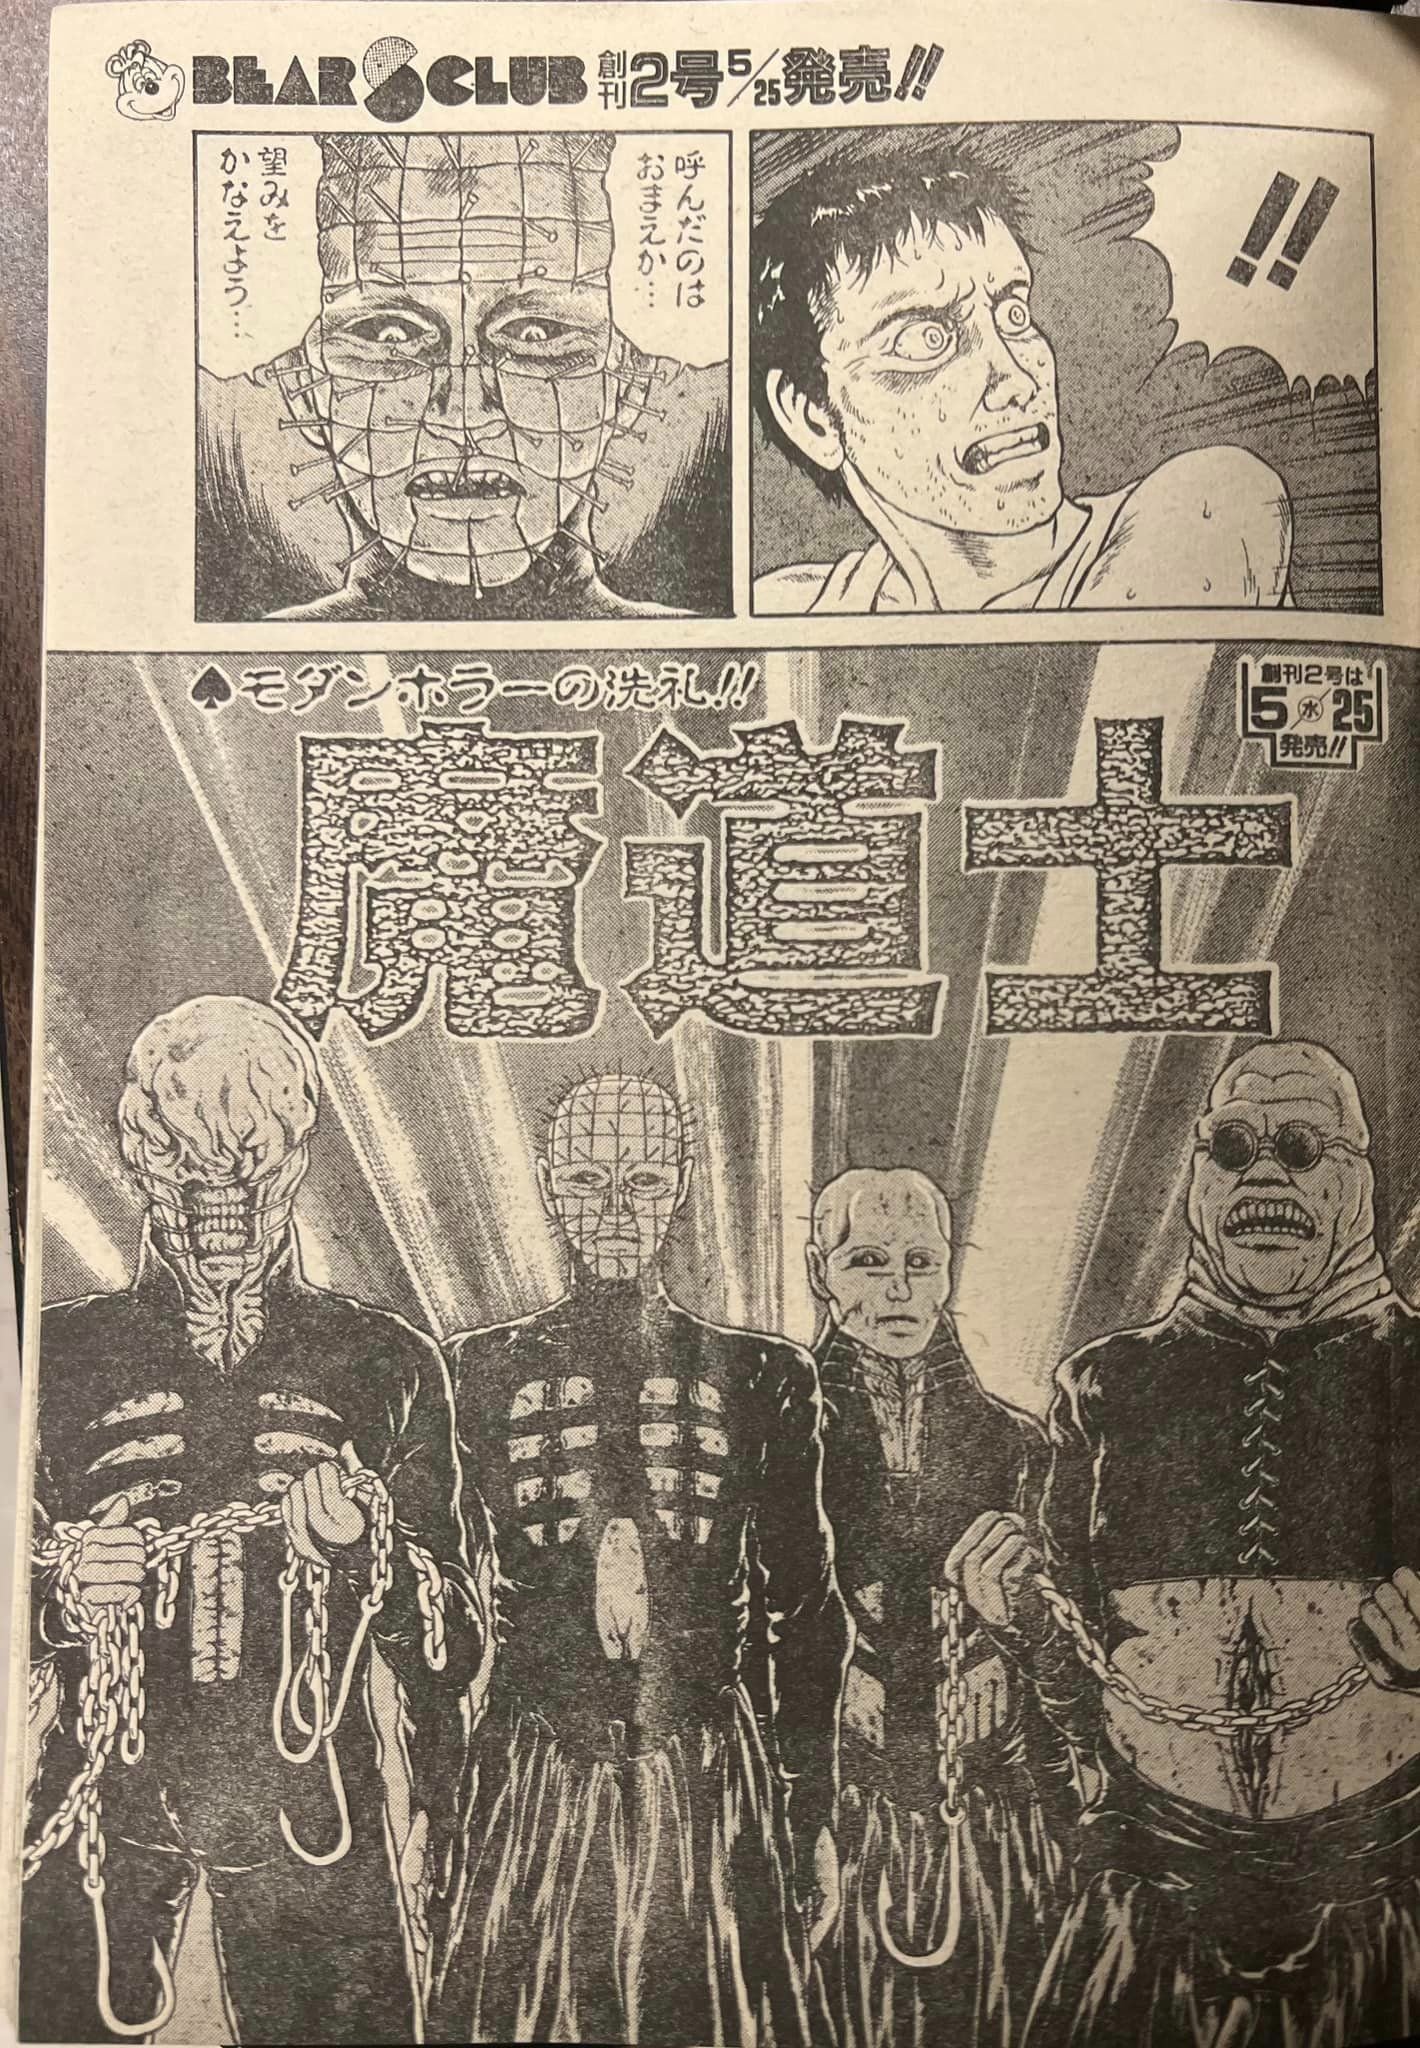 hellraiser-manga.jpg